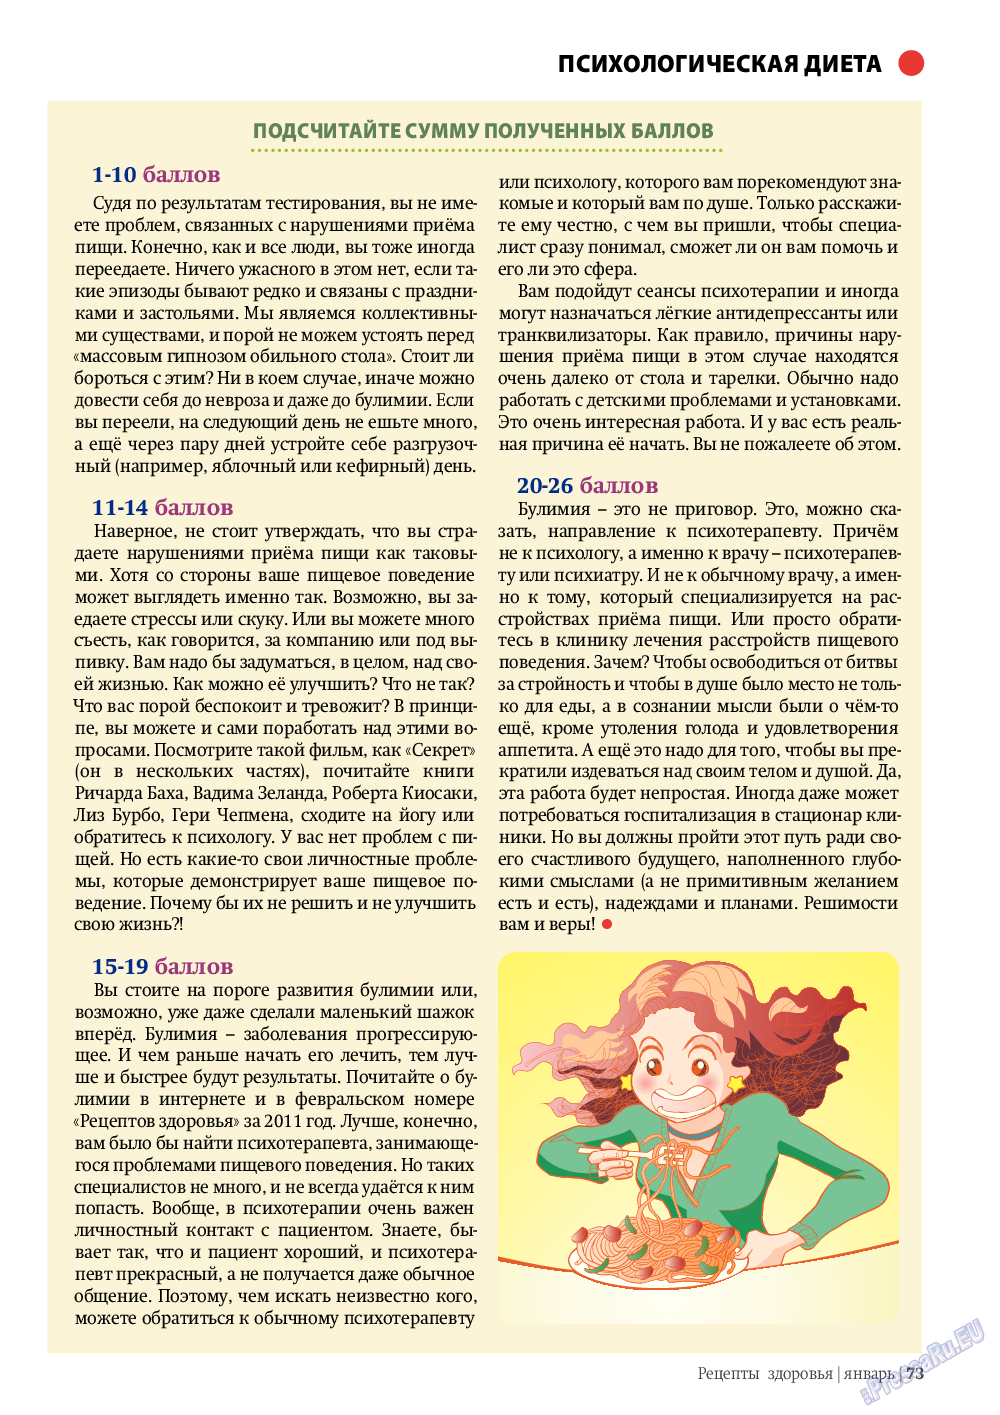 Рецепты здоровья, журнал. 2012 №1 стр.73